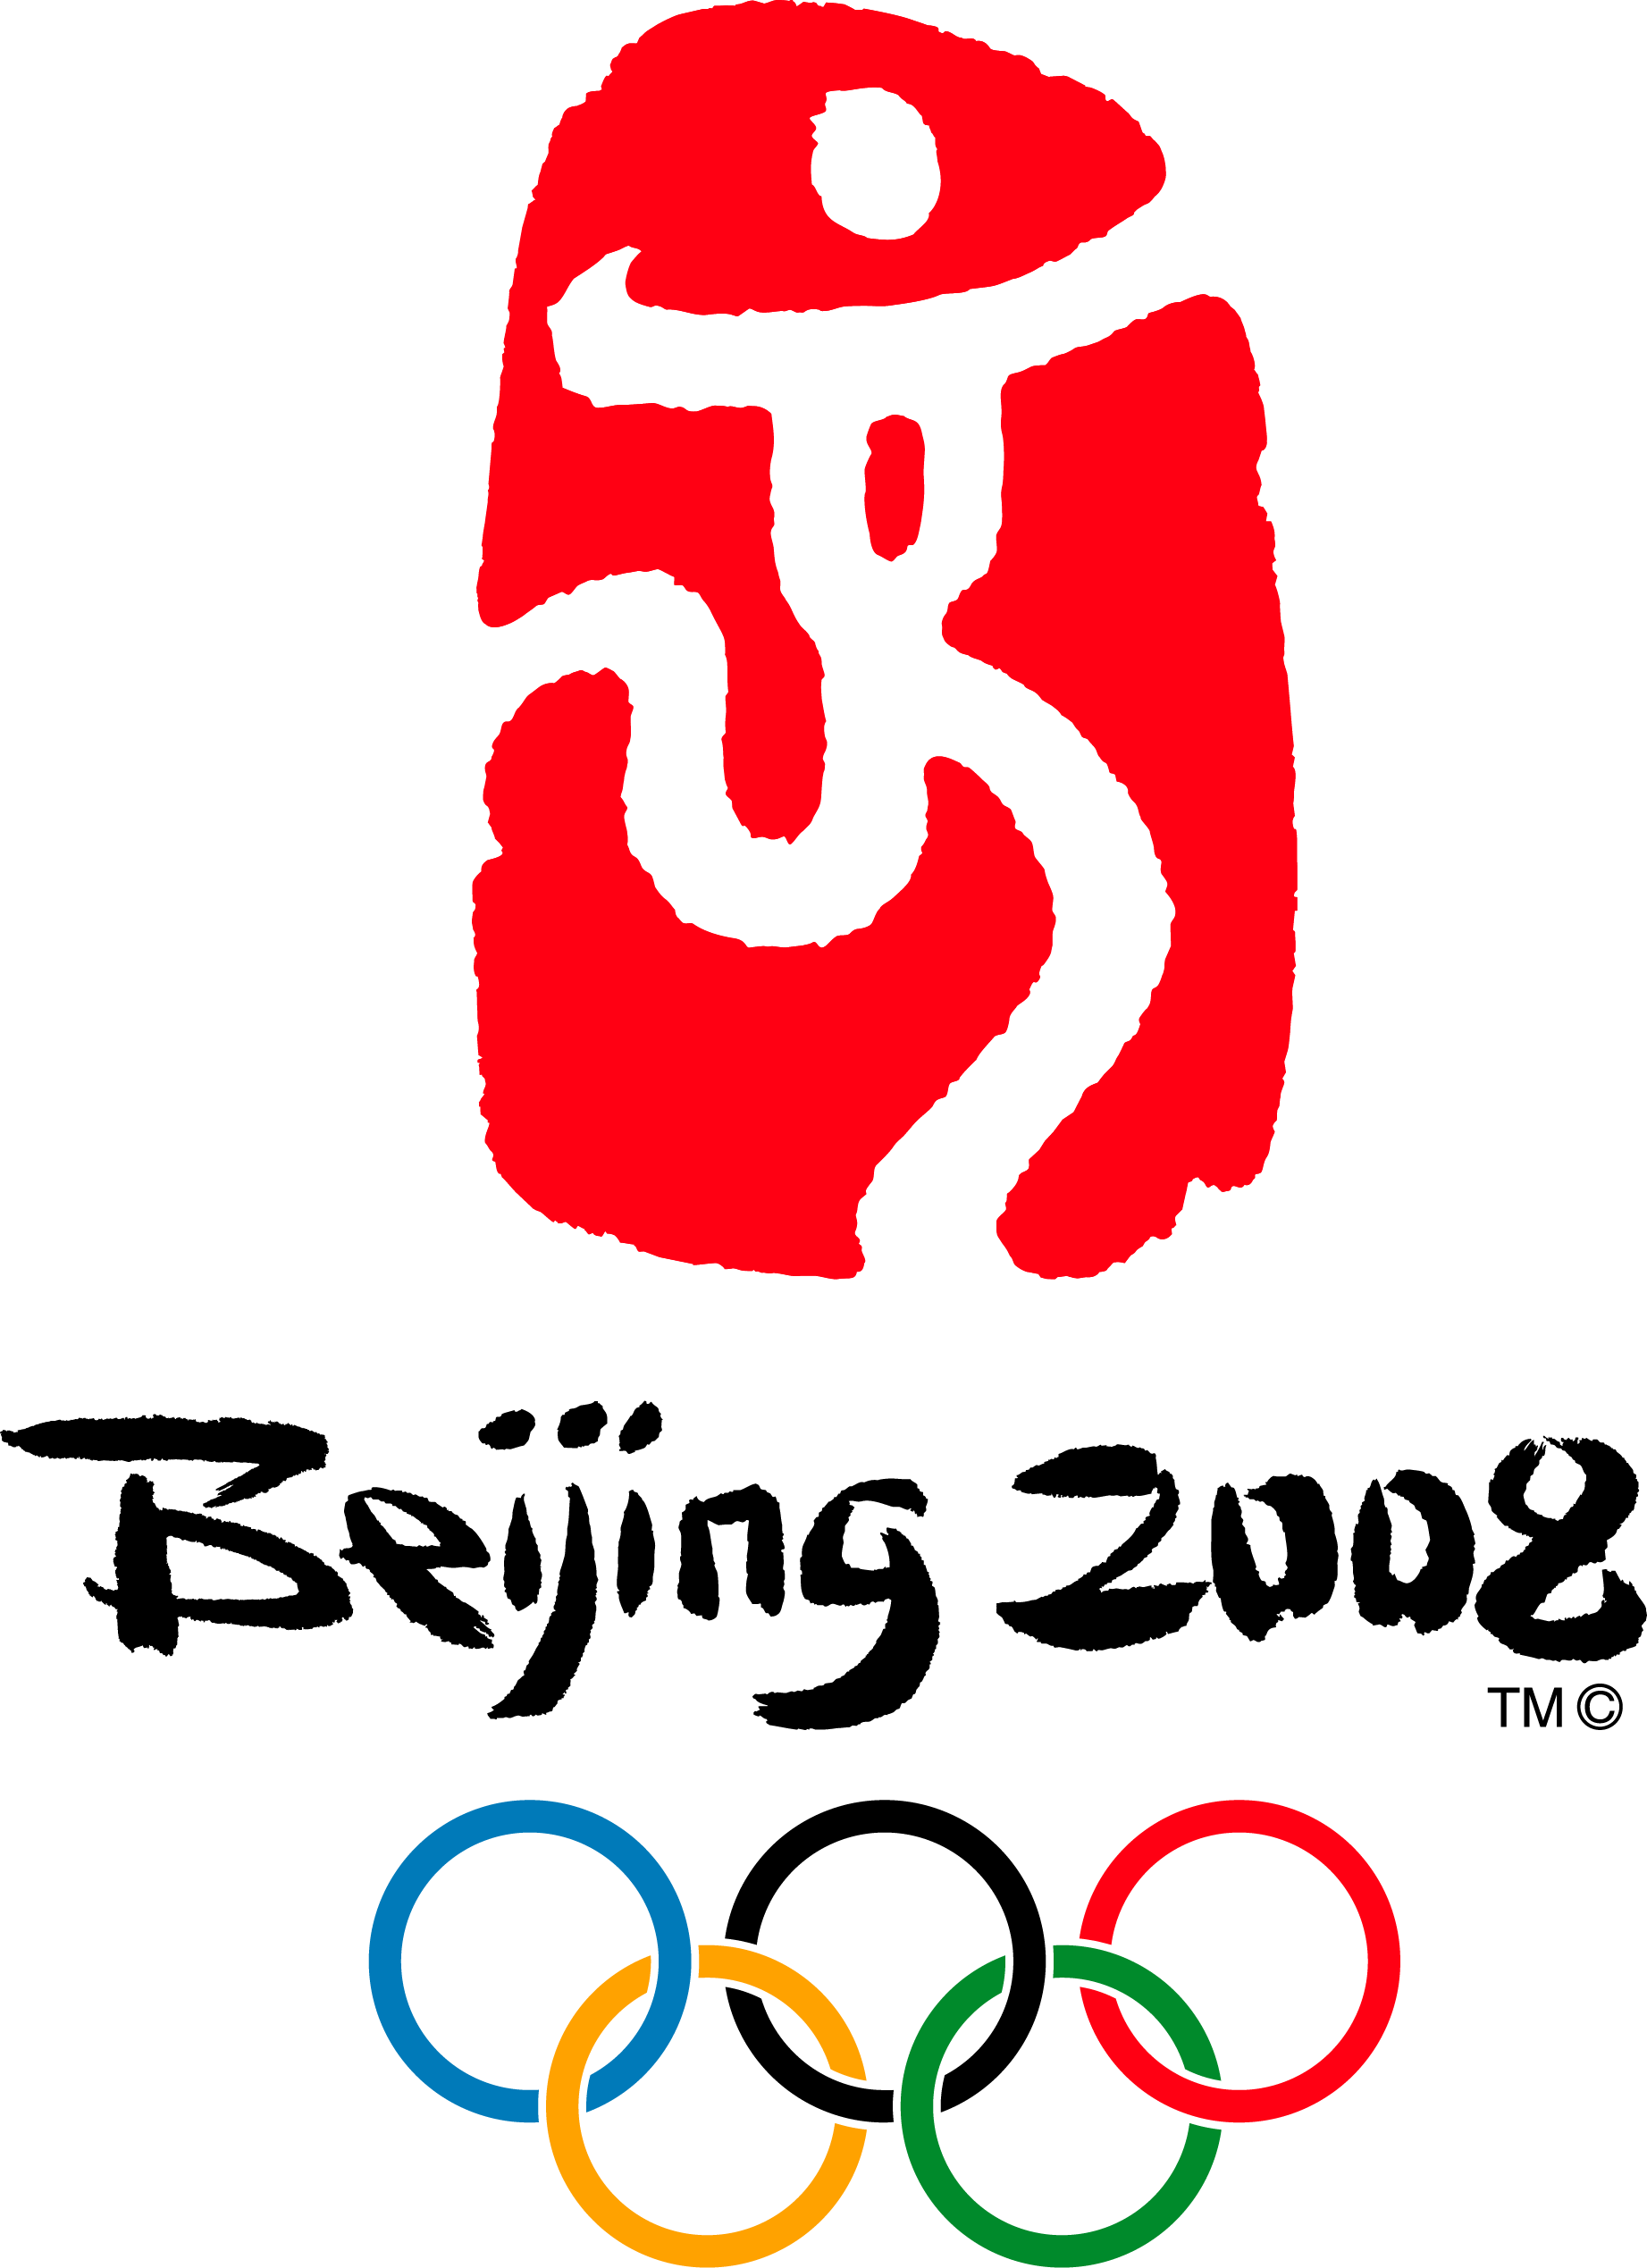 2008年奥运标志图片图片